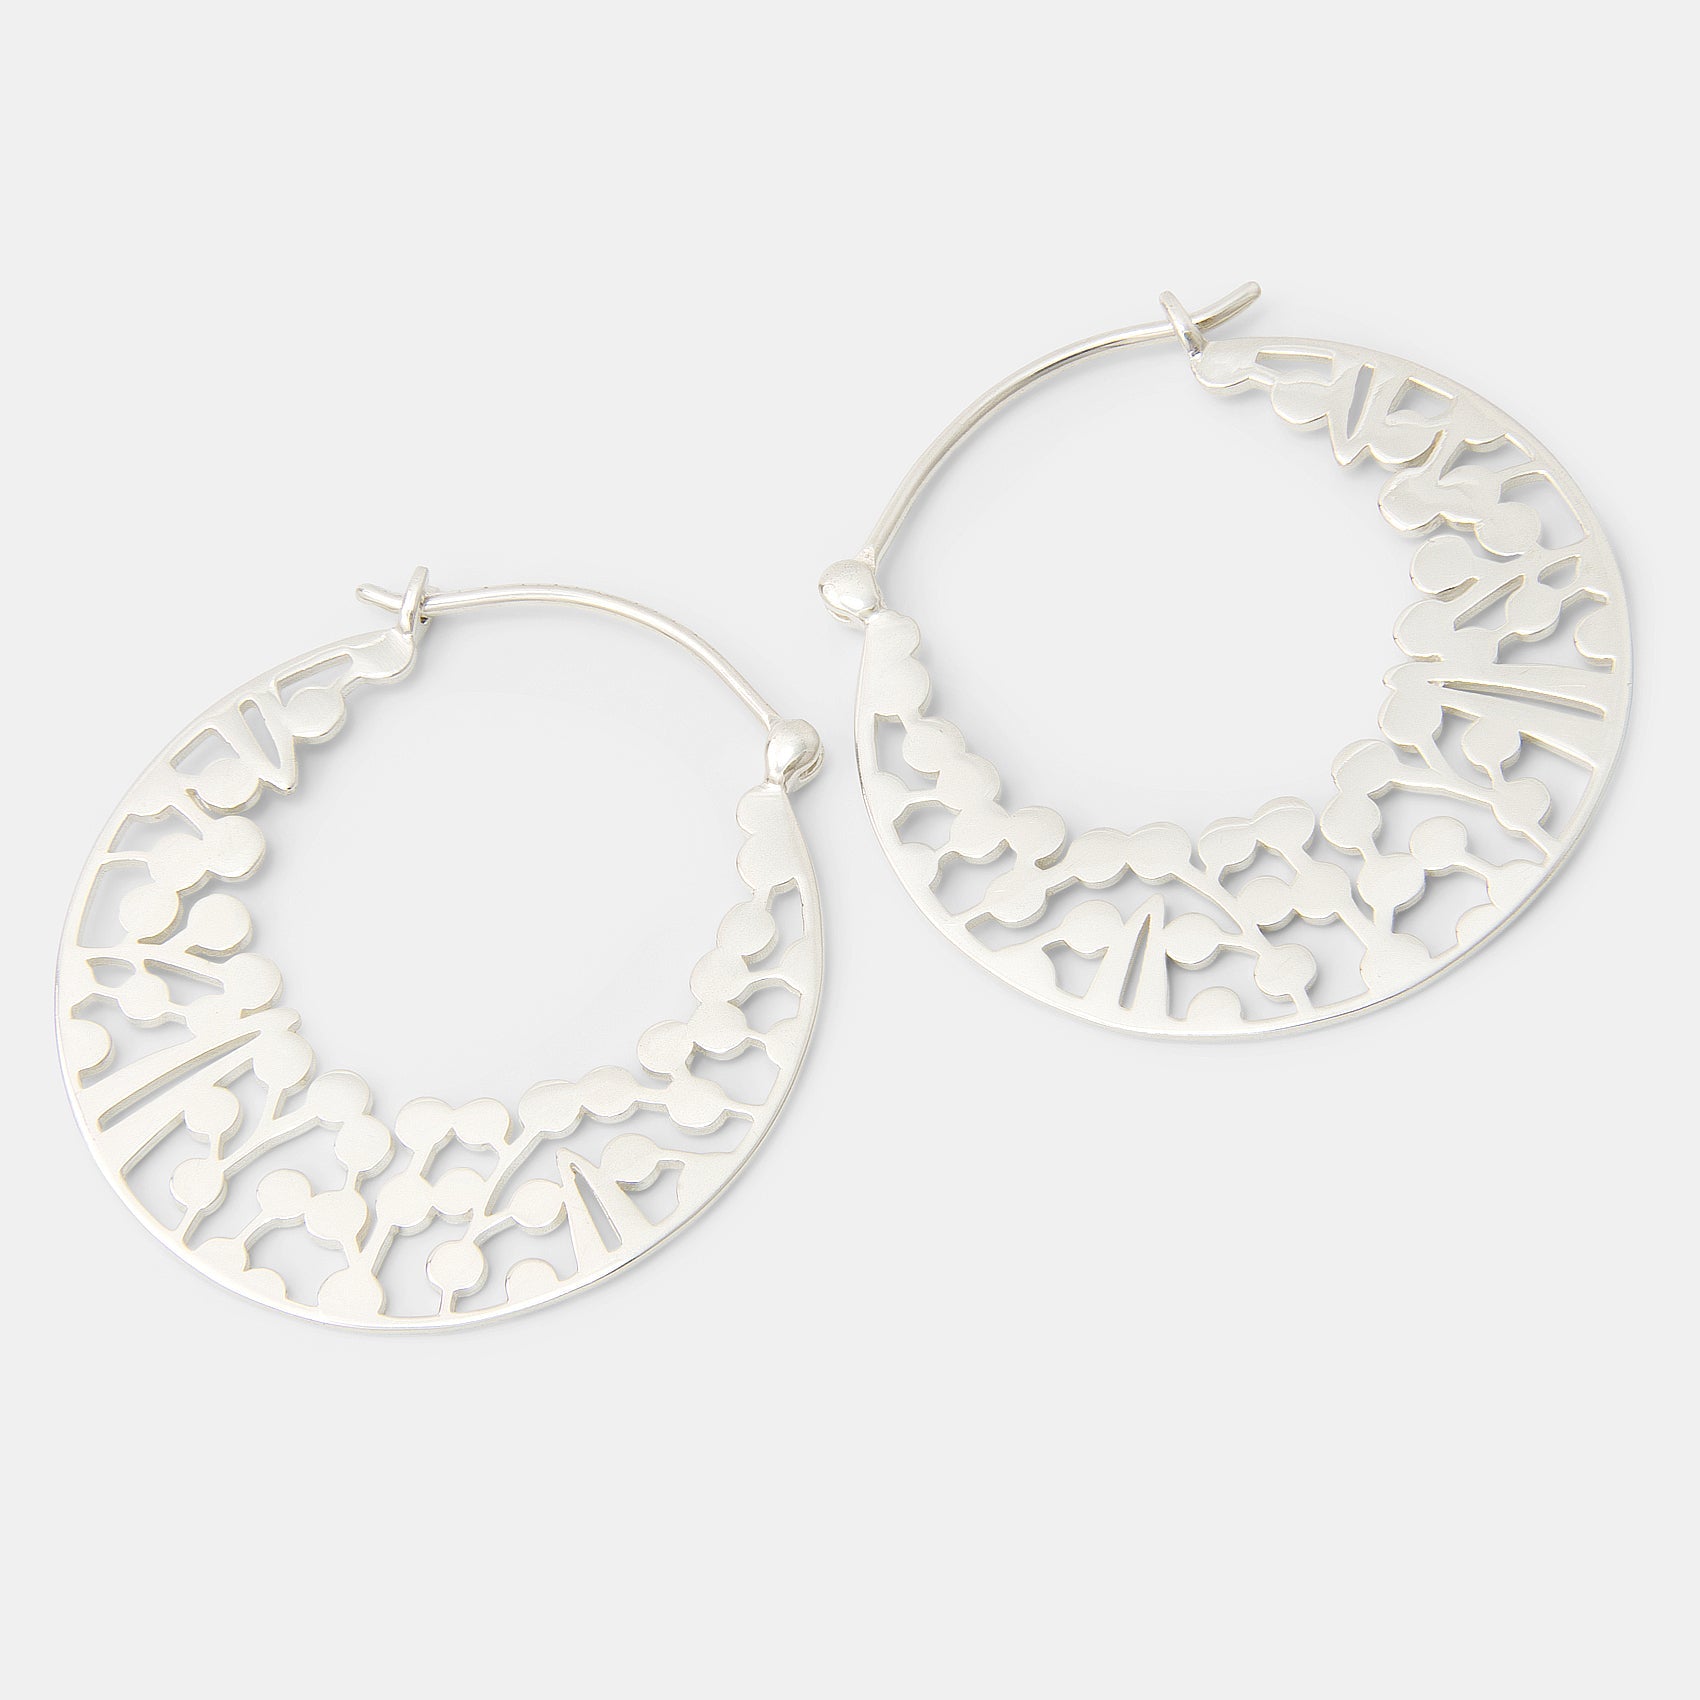 Wattle Wreath Silver Hoop Earrings - Simone Walsh Jewellery Australia